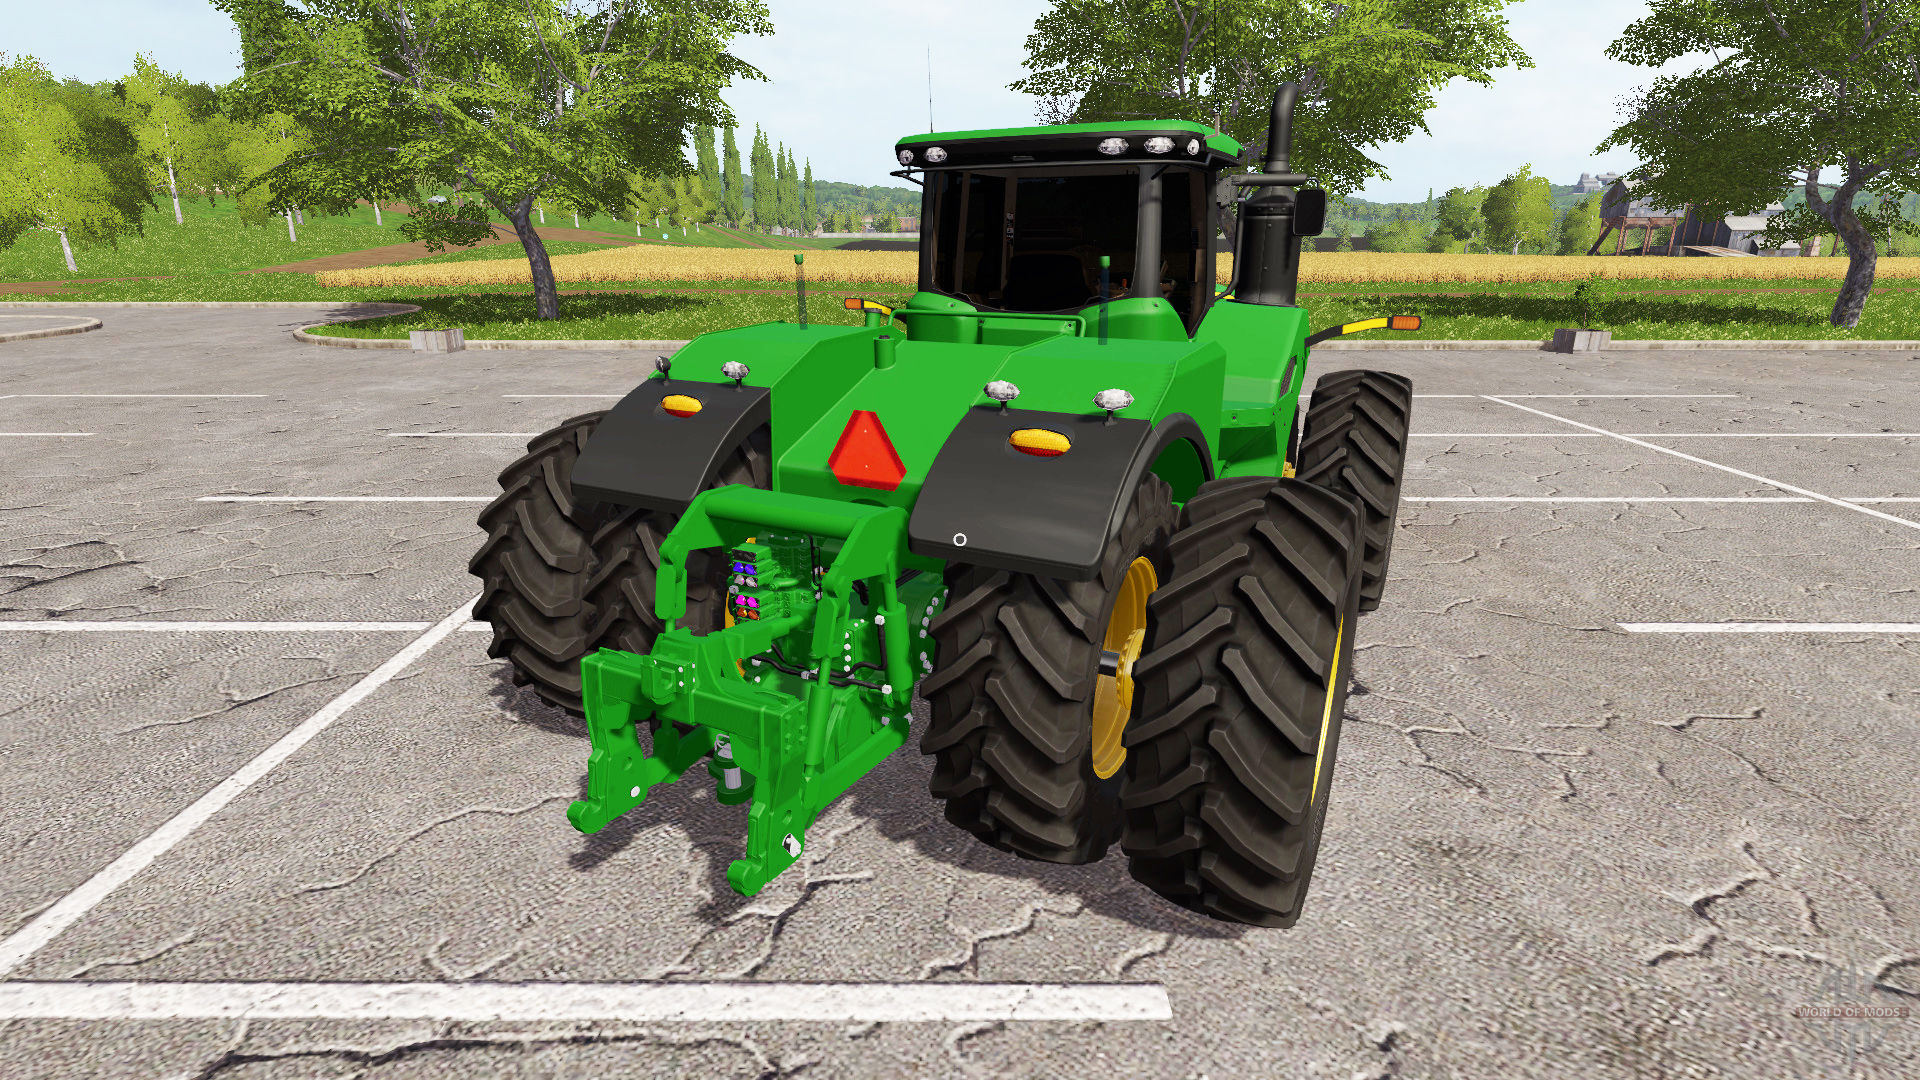 John Deere 9620R for Farming Simulator 2017